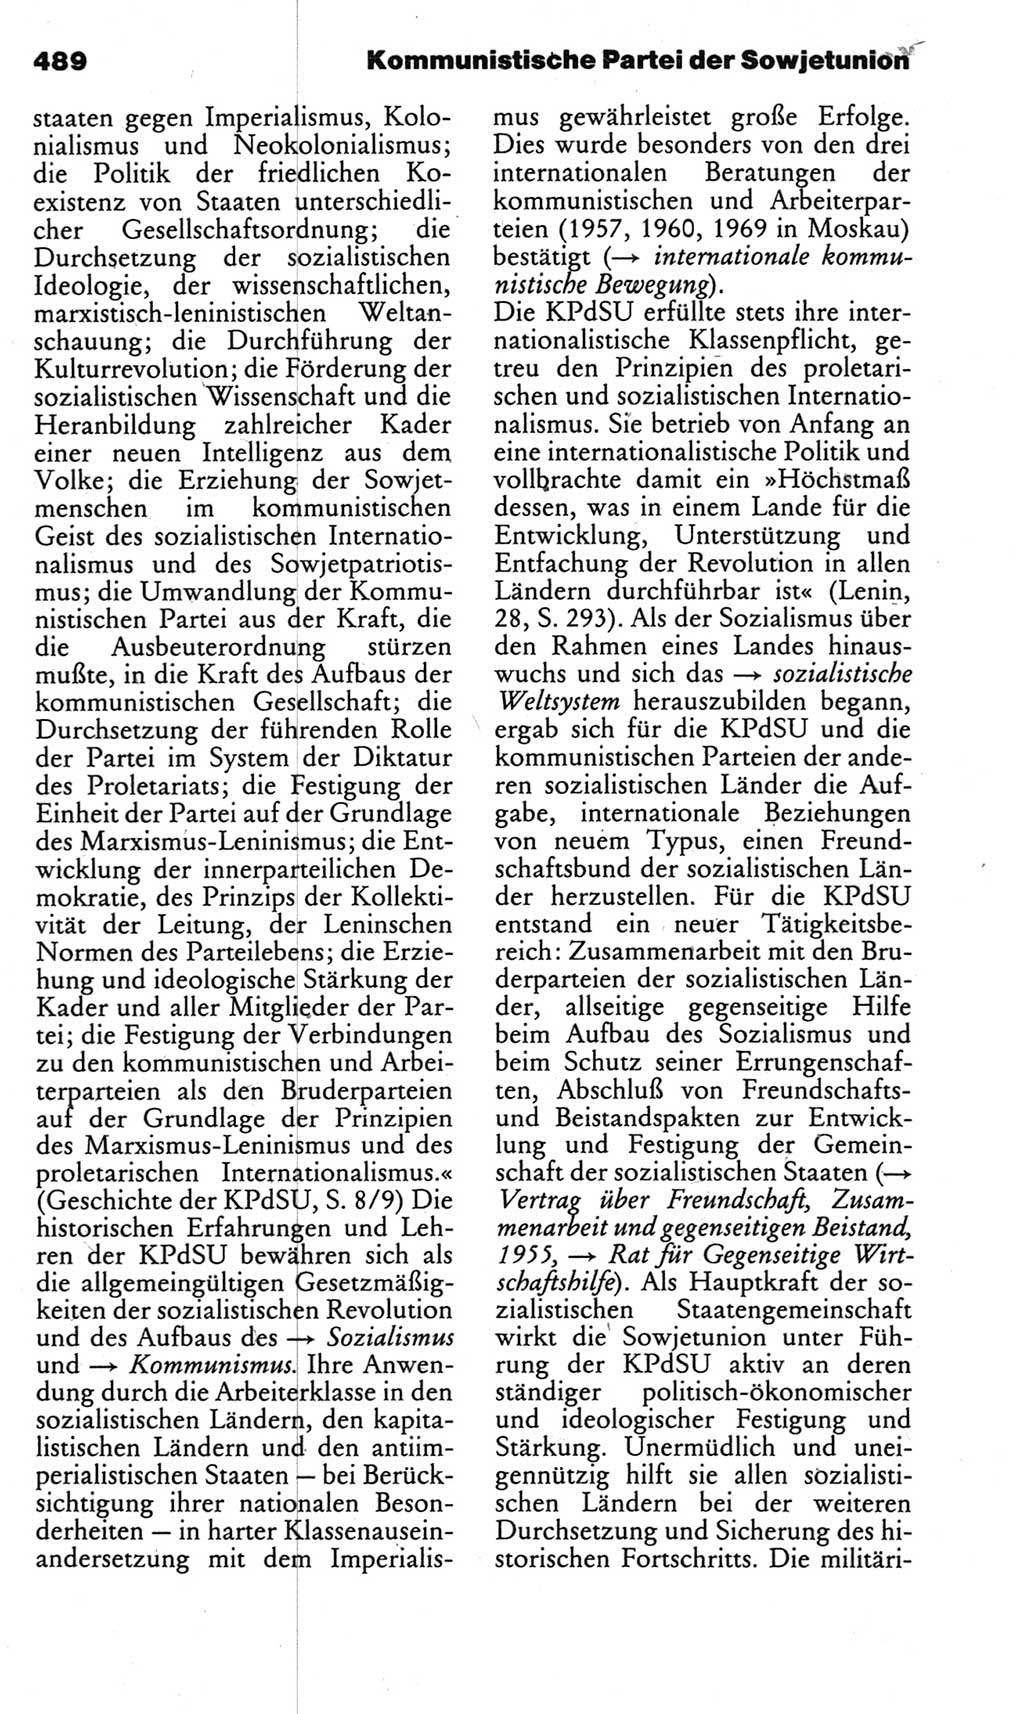 Kleines politisches Wörterbuch [Deutsche Demokratische Republik (DDR)] 1983, Seite 489 (Kl. pol. Wb. DDR 1983, S. 489)